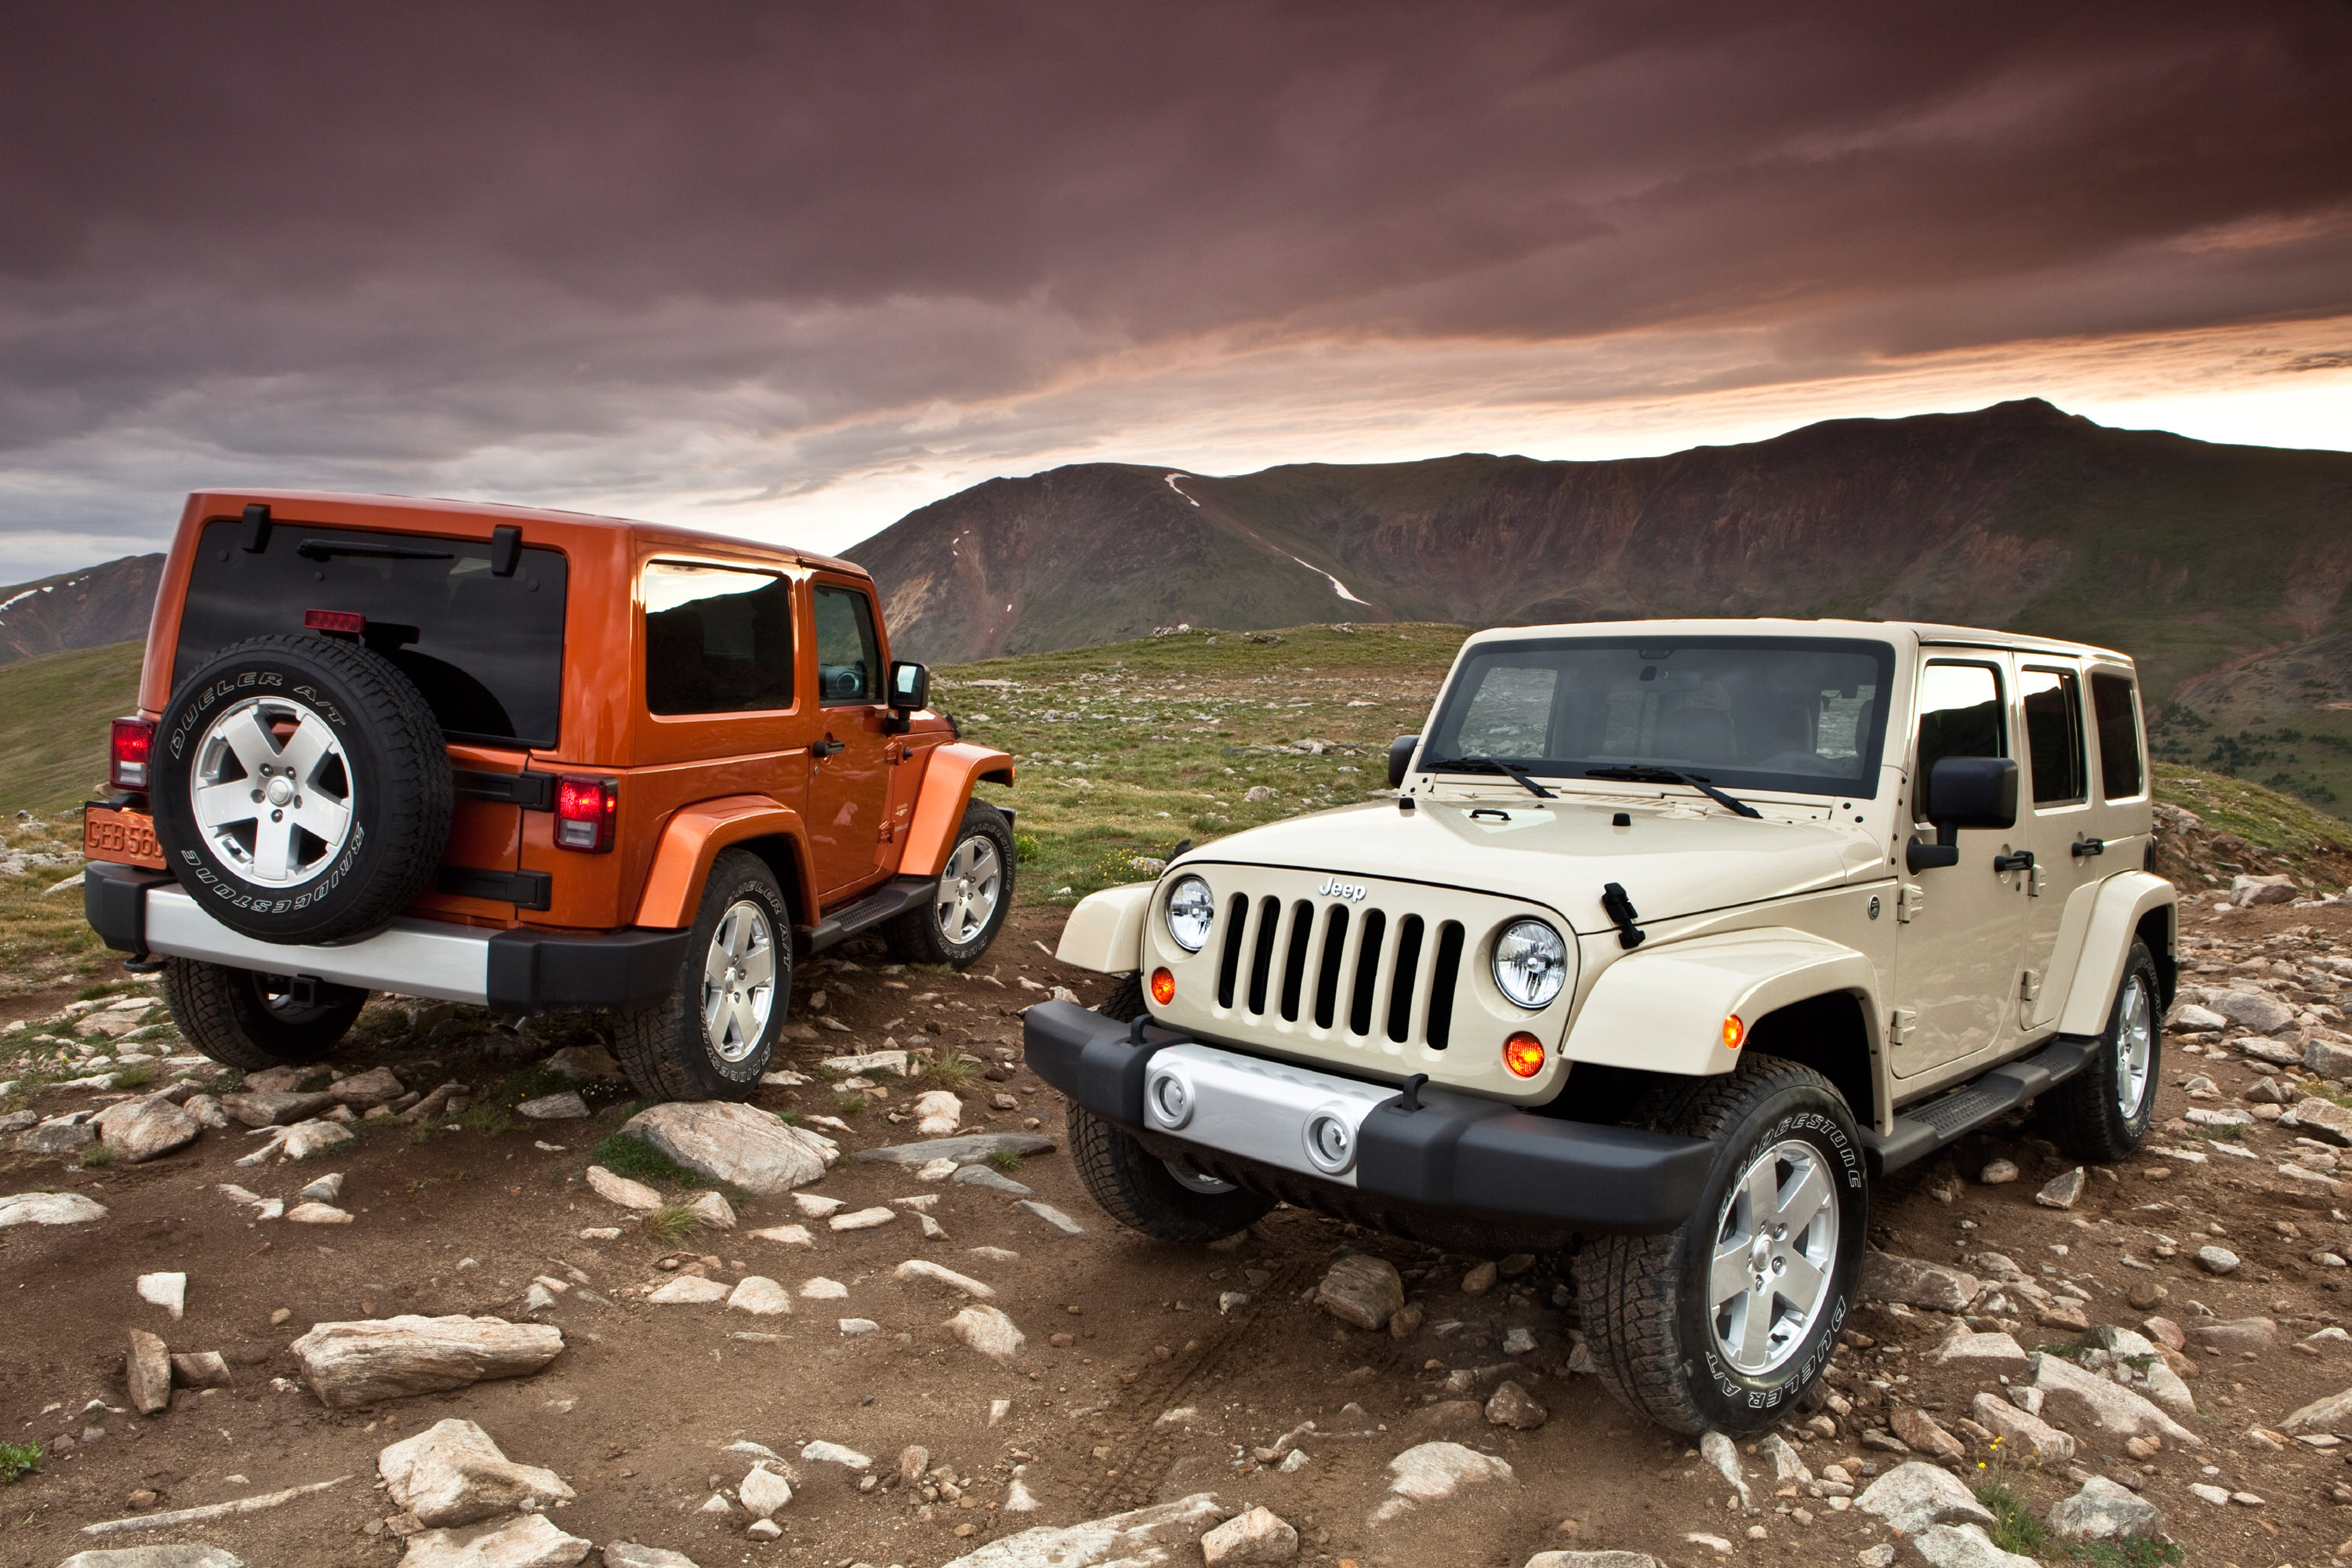 Какие машины джипы. Джип Вранглер 1. Jeep Wrangler 2011. Jeep Wrangler Unlimited 2011. Jeep Wrangler 2011 Unlimited Sahara.